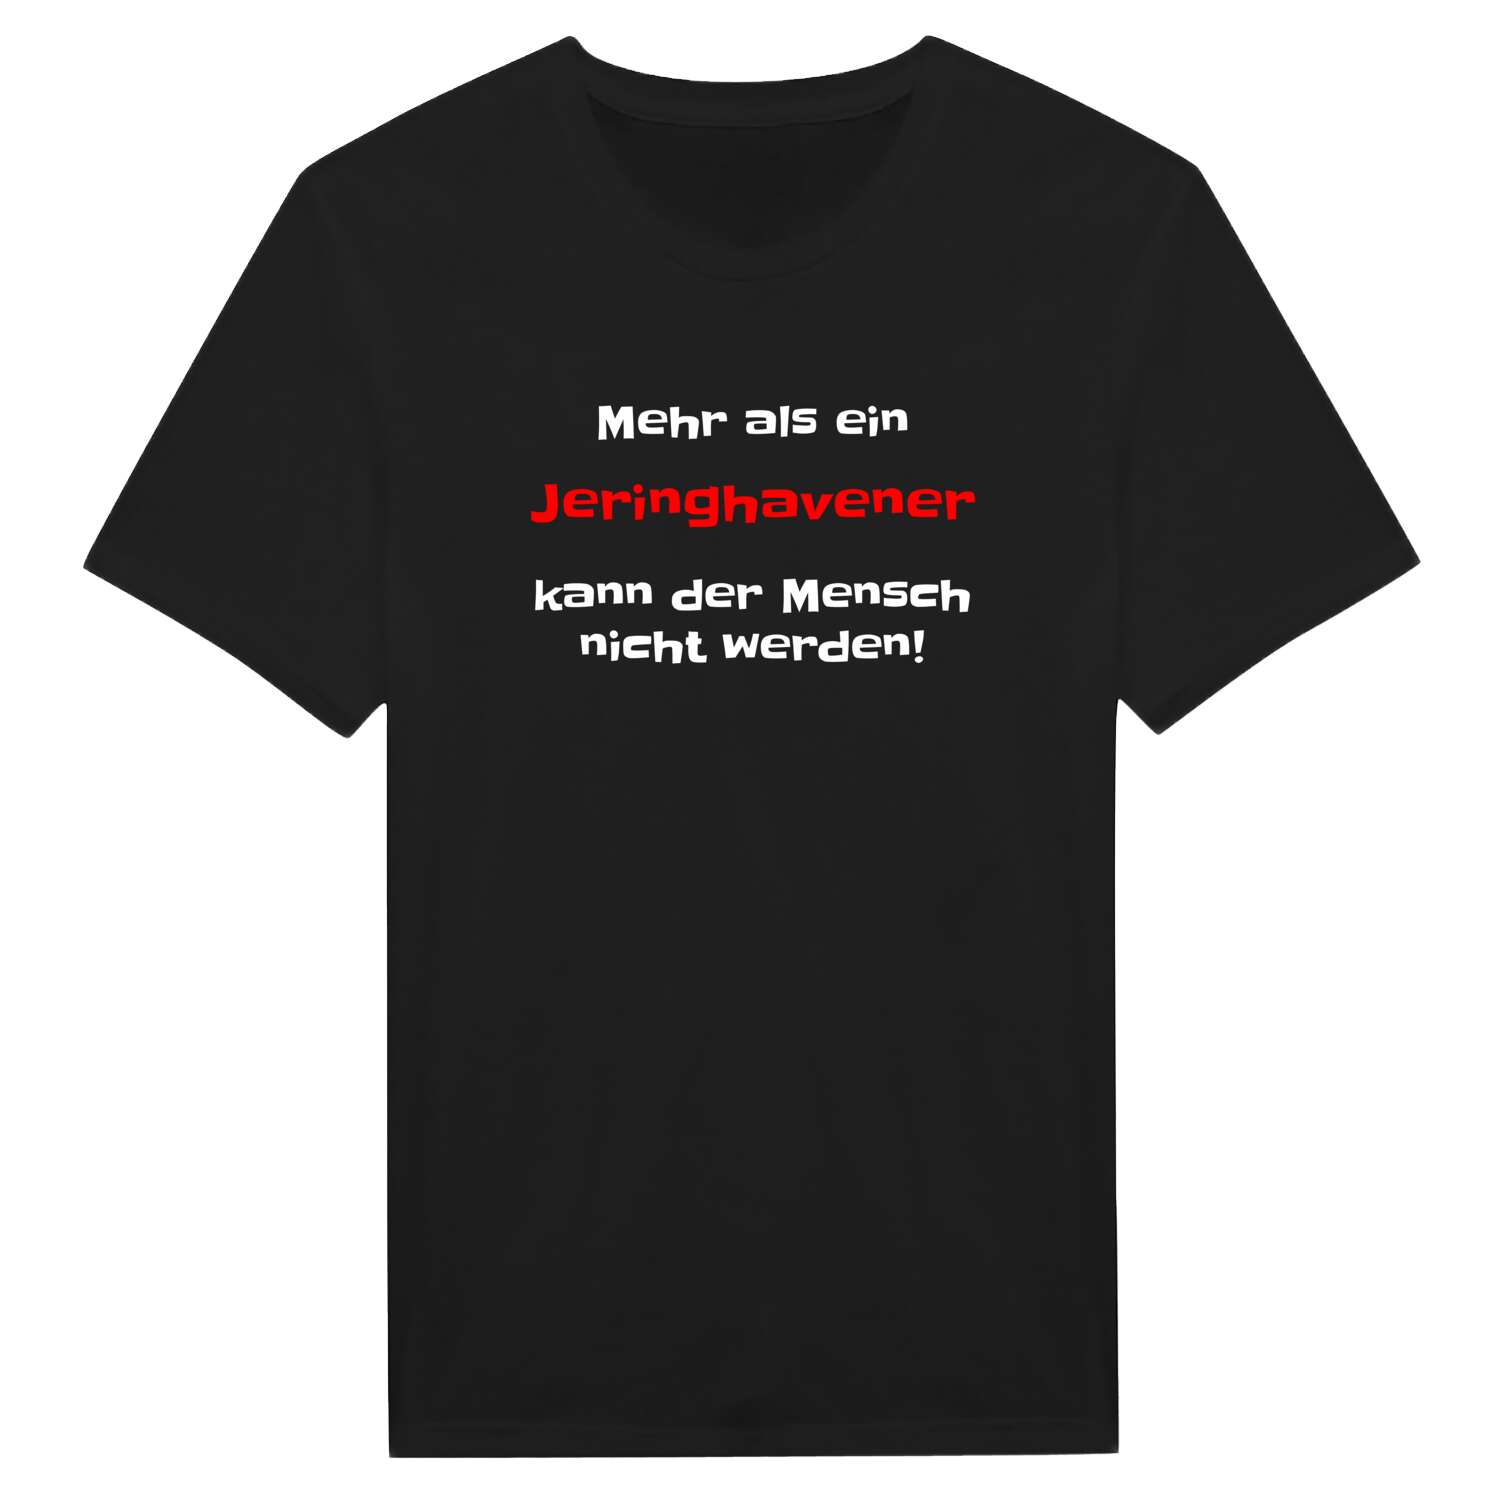 Jeringhave T-Shirt »Mehr als ein«